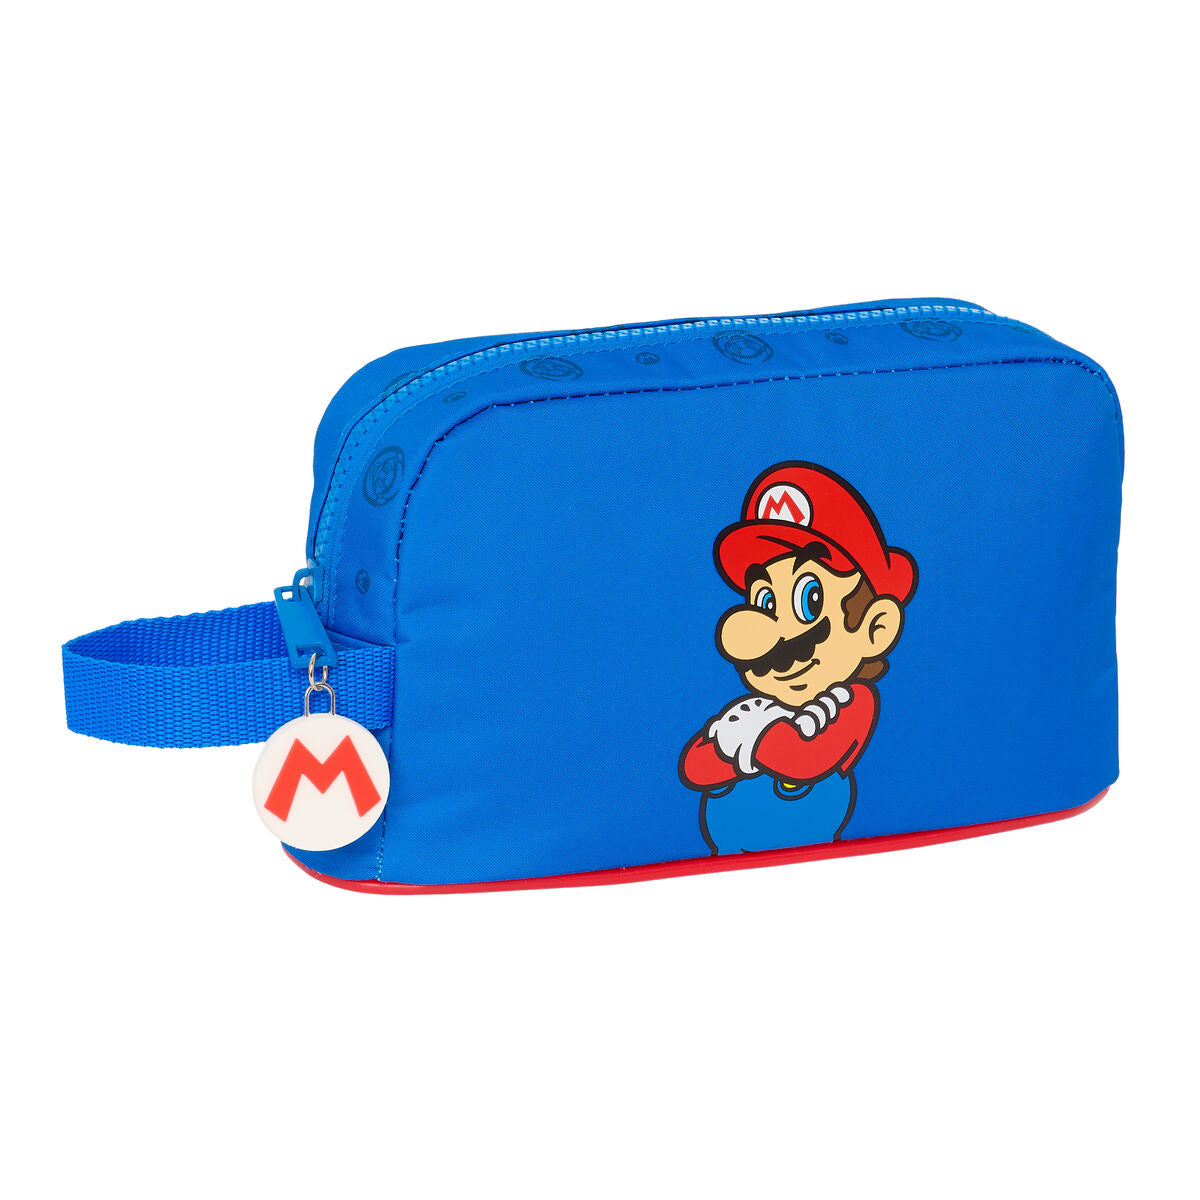 Portamerenda Termico Super Mario Play Azzurro Rosso 21.5 x 12 x 6.5 cm